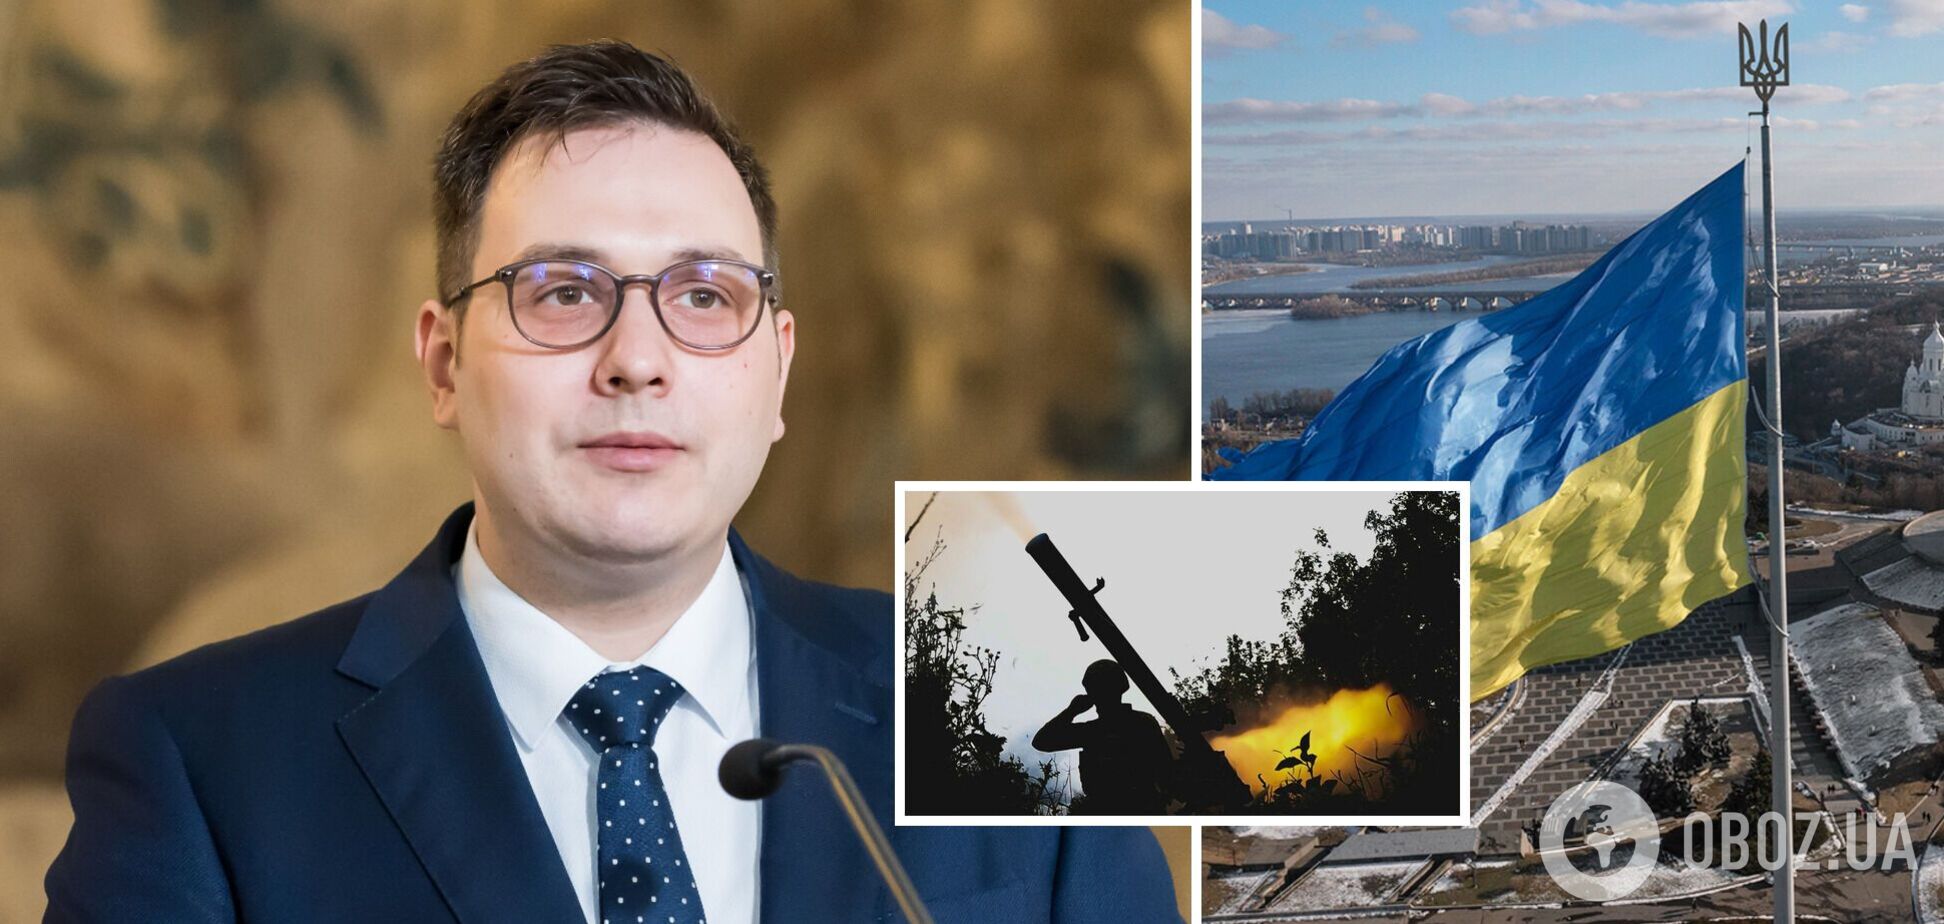 Европа должна помочь Украине, чтобы держать Россию подальше от своих границ, – глава МИД Чехии